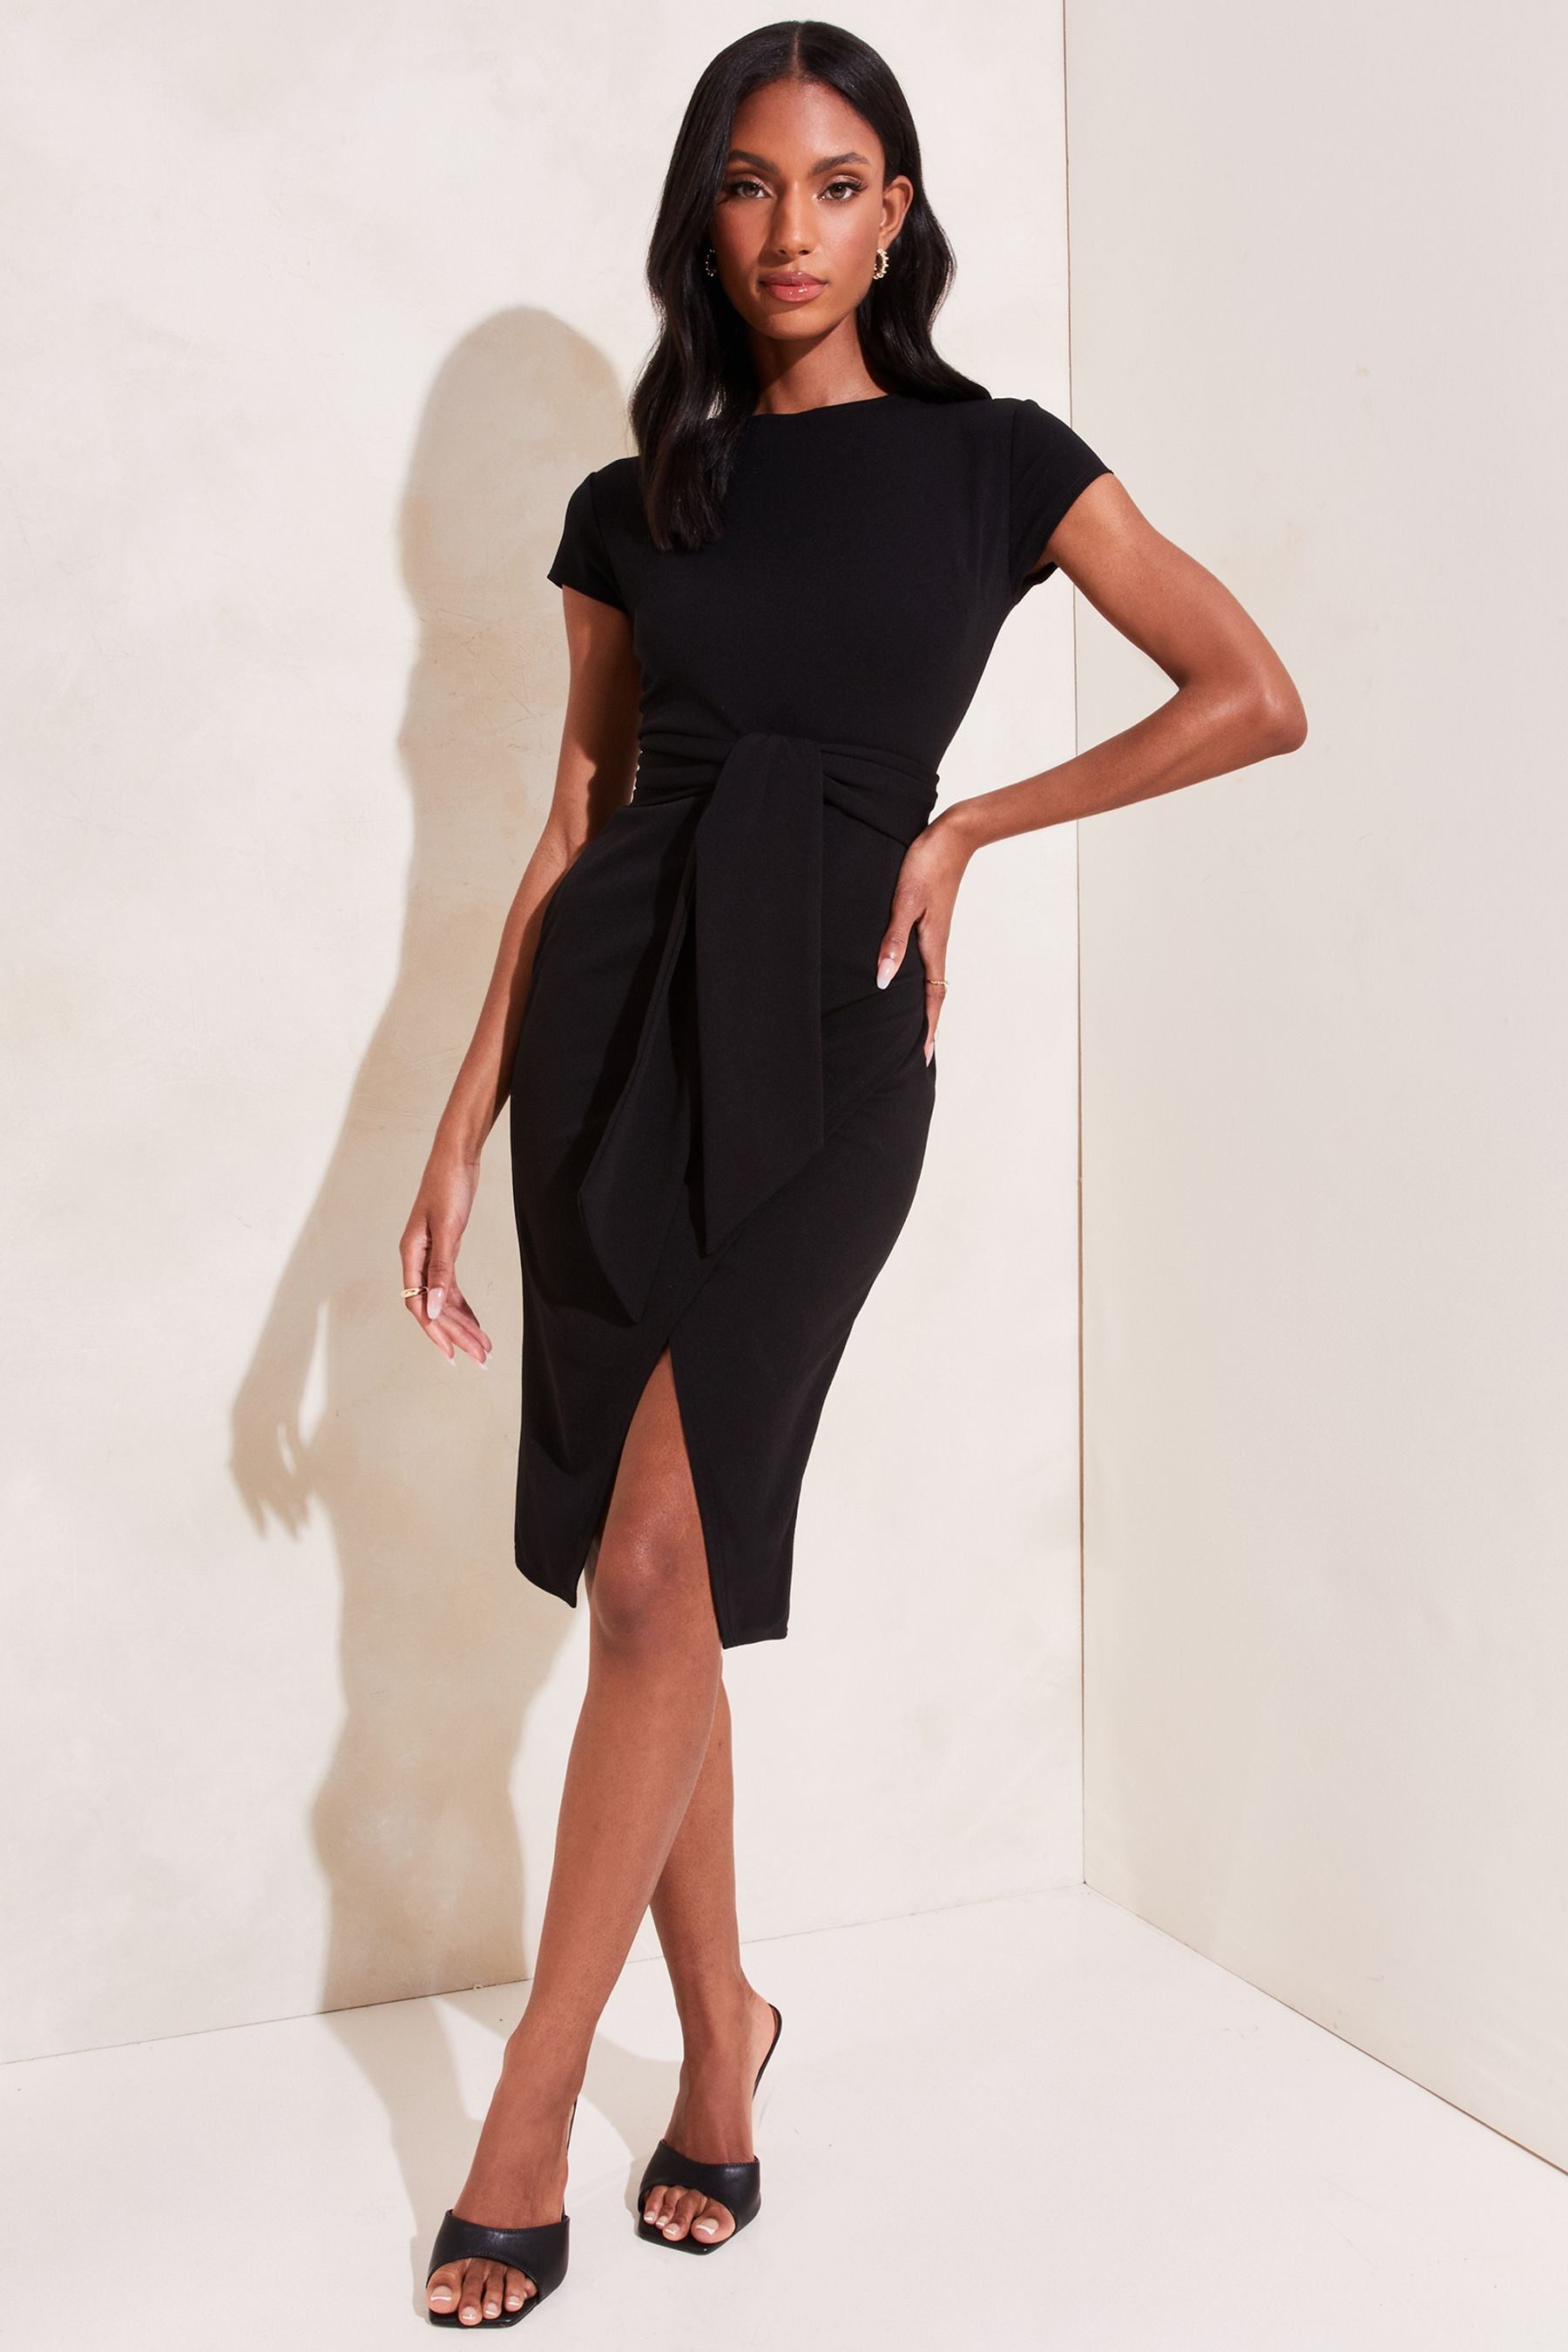 Buy Lipsy Black Tie Waist Bodycon Dress from Next Ireland